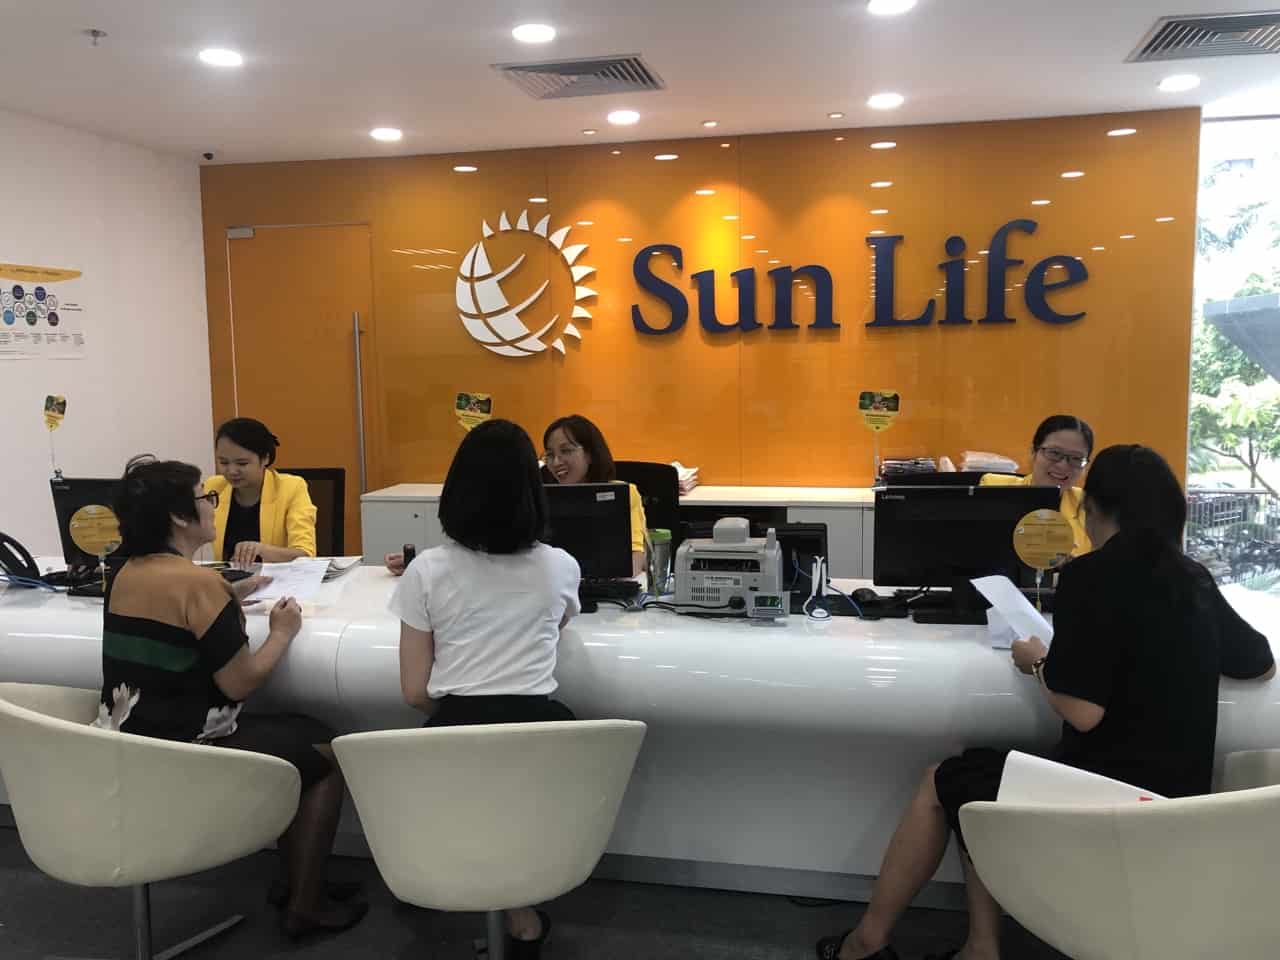 [Bảo hiểm nhân thọ] Bảo hiểm Sun life có tốt không? 6